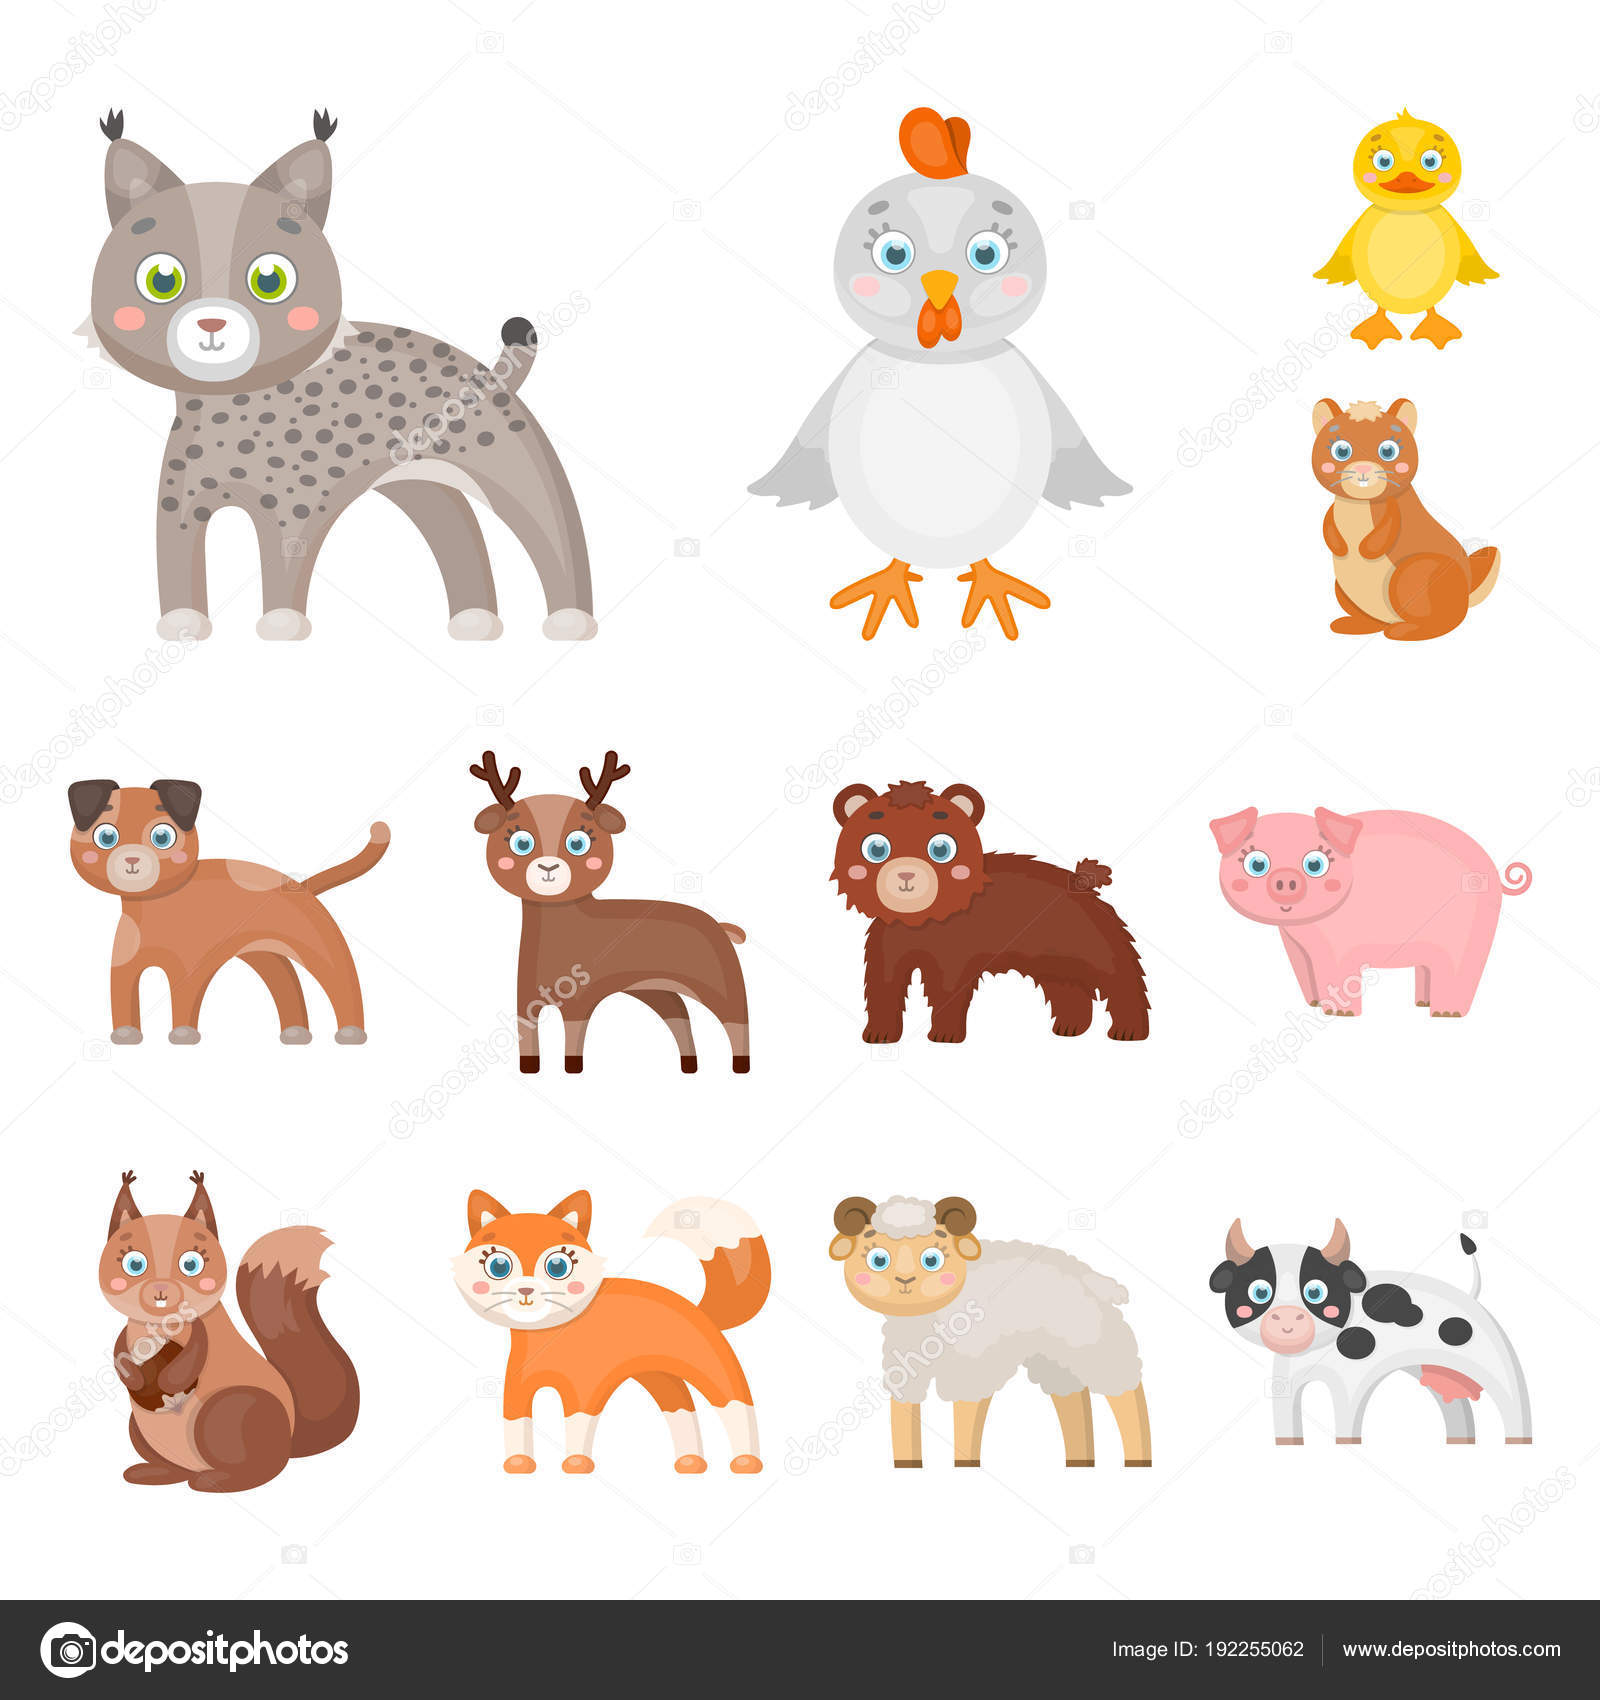 981 ilustraciones de stock de Animales herbívoros | Depositphotos®